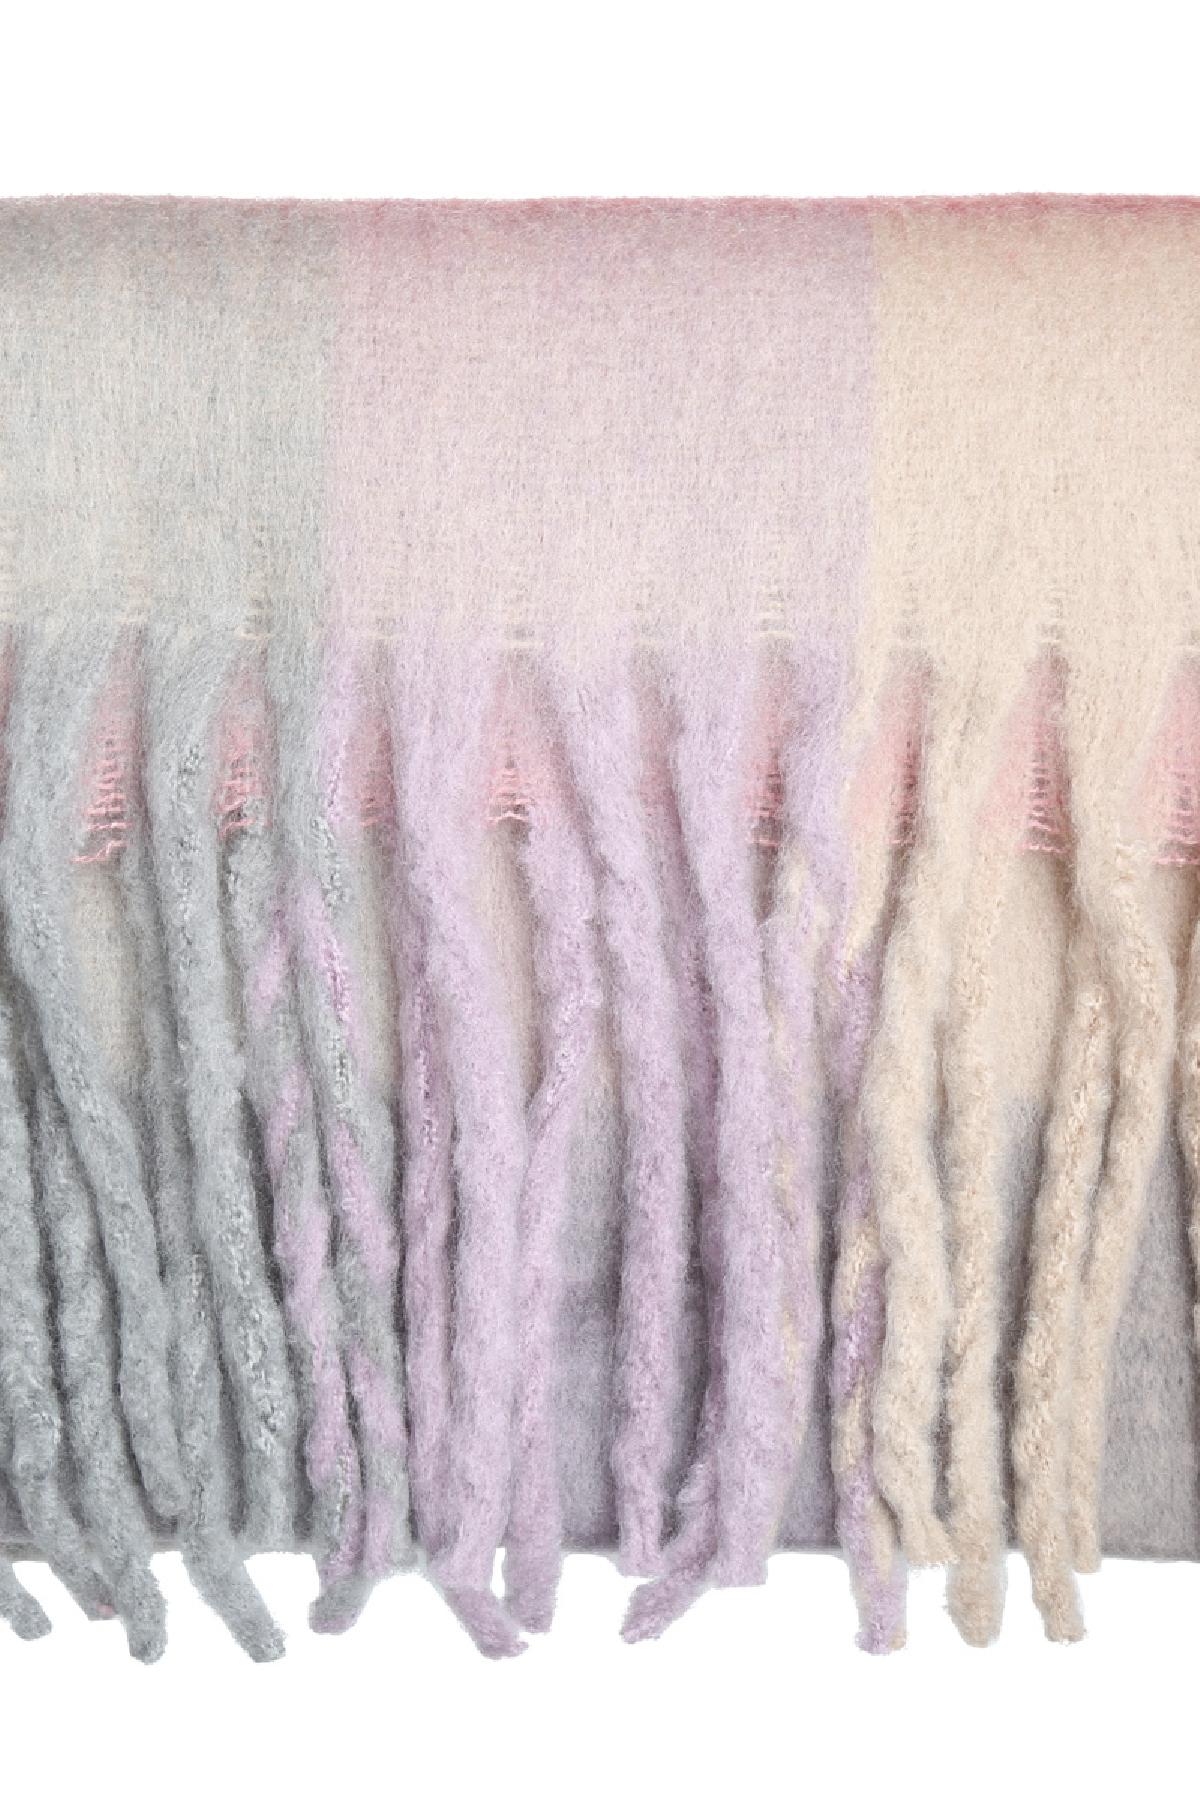 Kışlık eşarp kareli renkler Lilac Polyester h5 Resim2